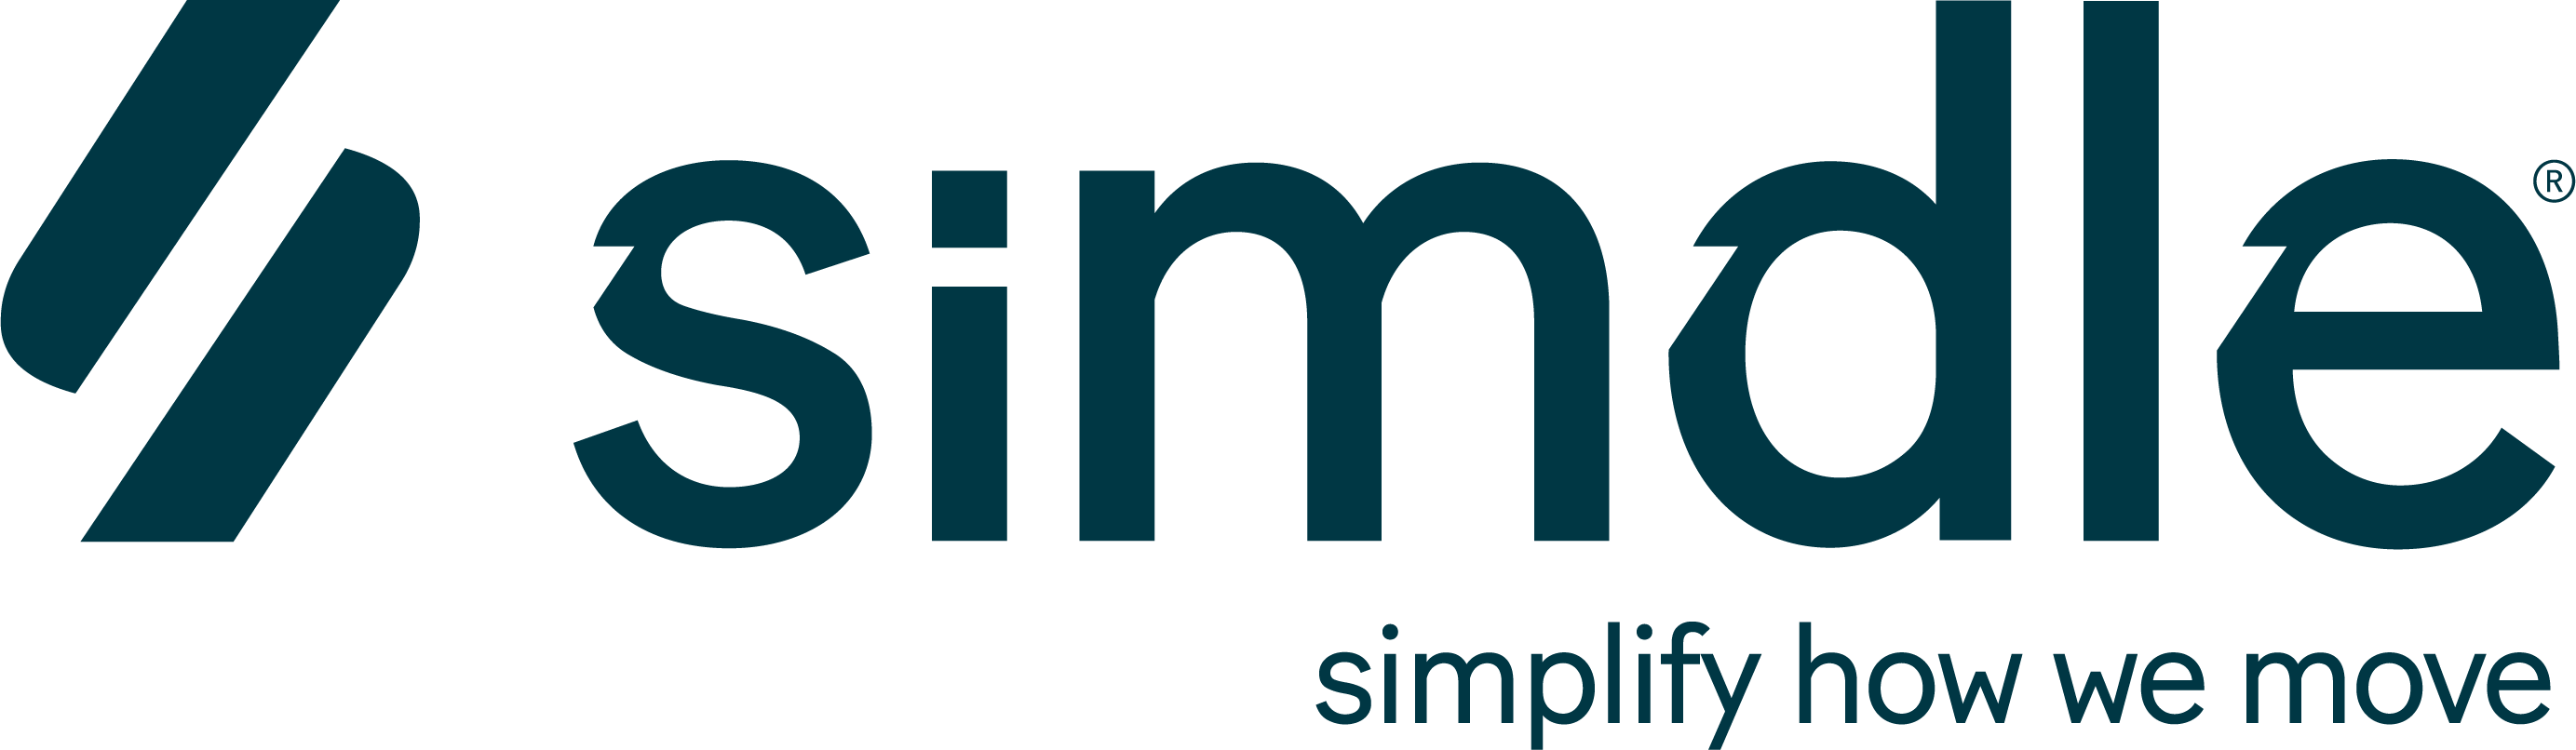 Launch der Marke „Simdle“: Driving Dreams of tomorrow mit digitalen Tools für die Mobilitäts- und Automobilindustrie 